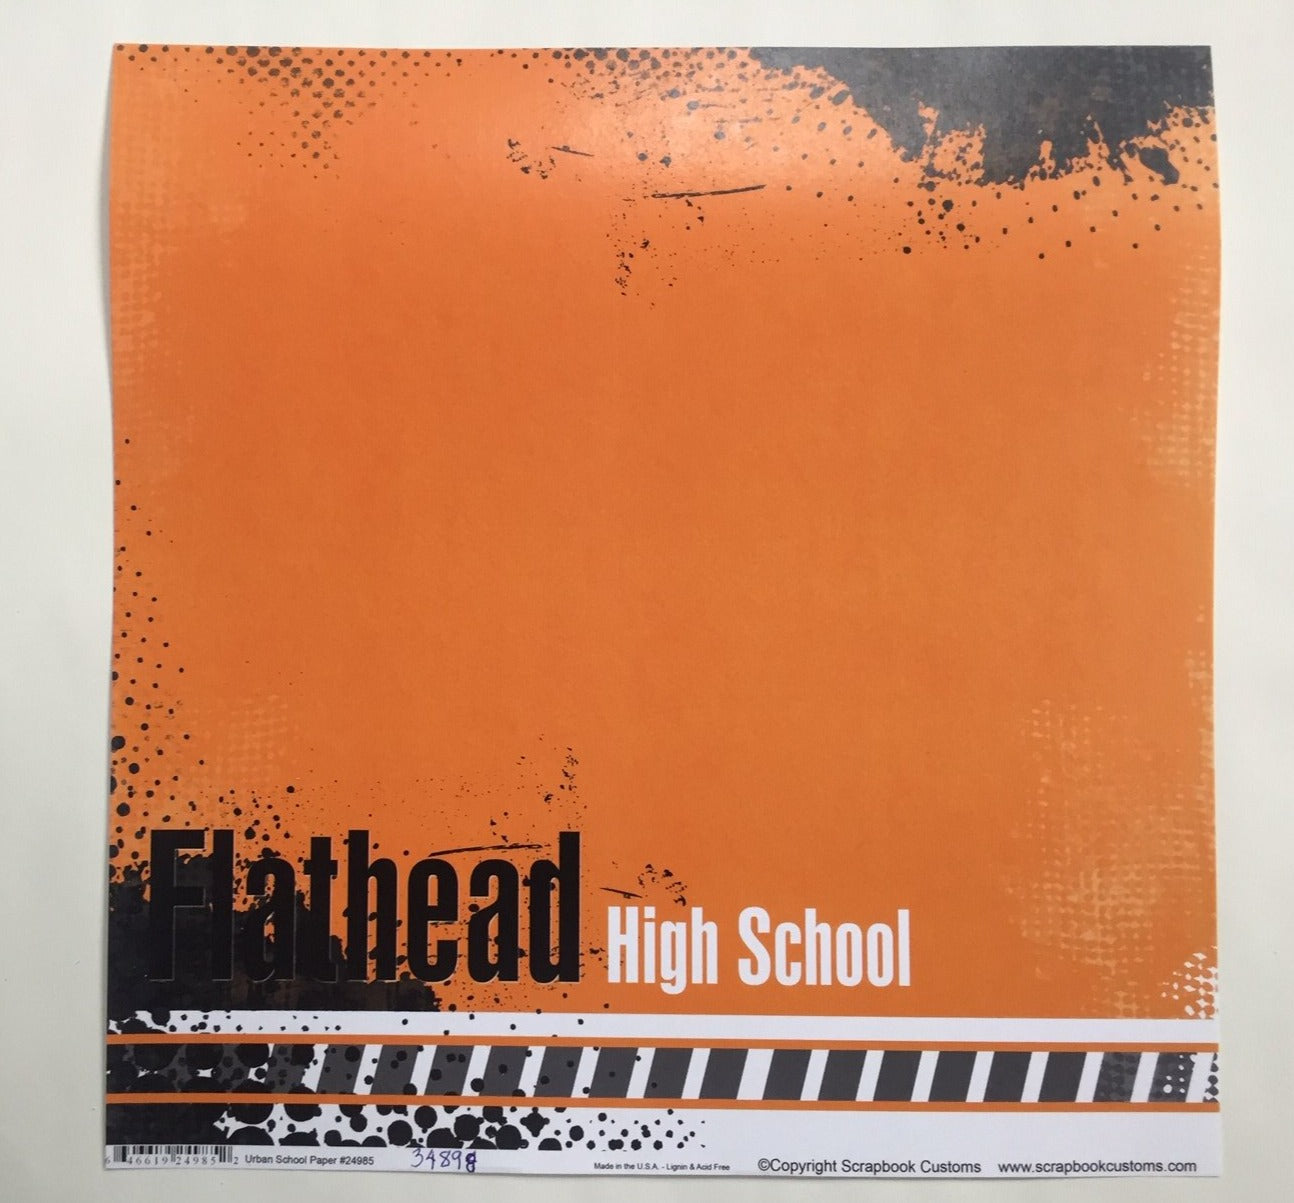 Flathead High School Urban School Paper